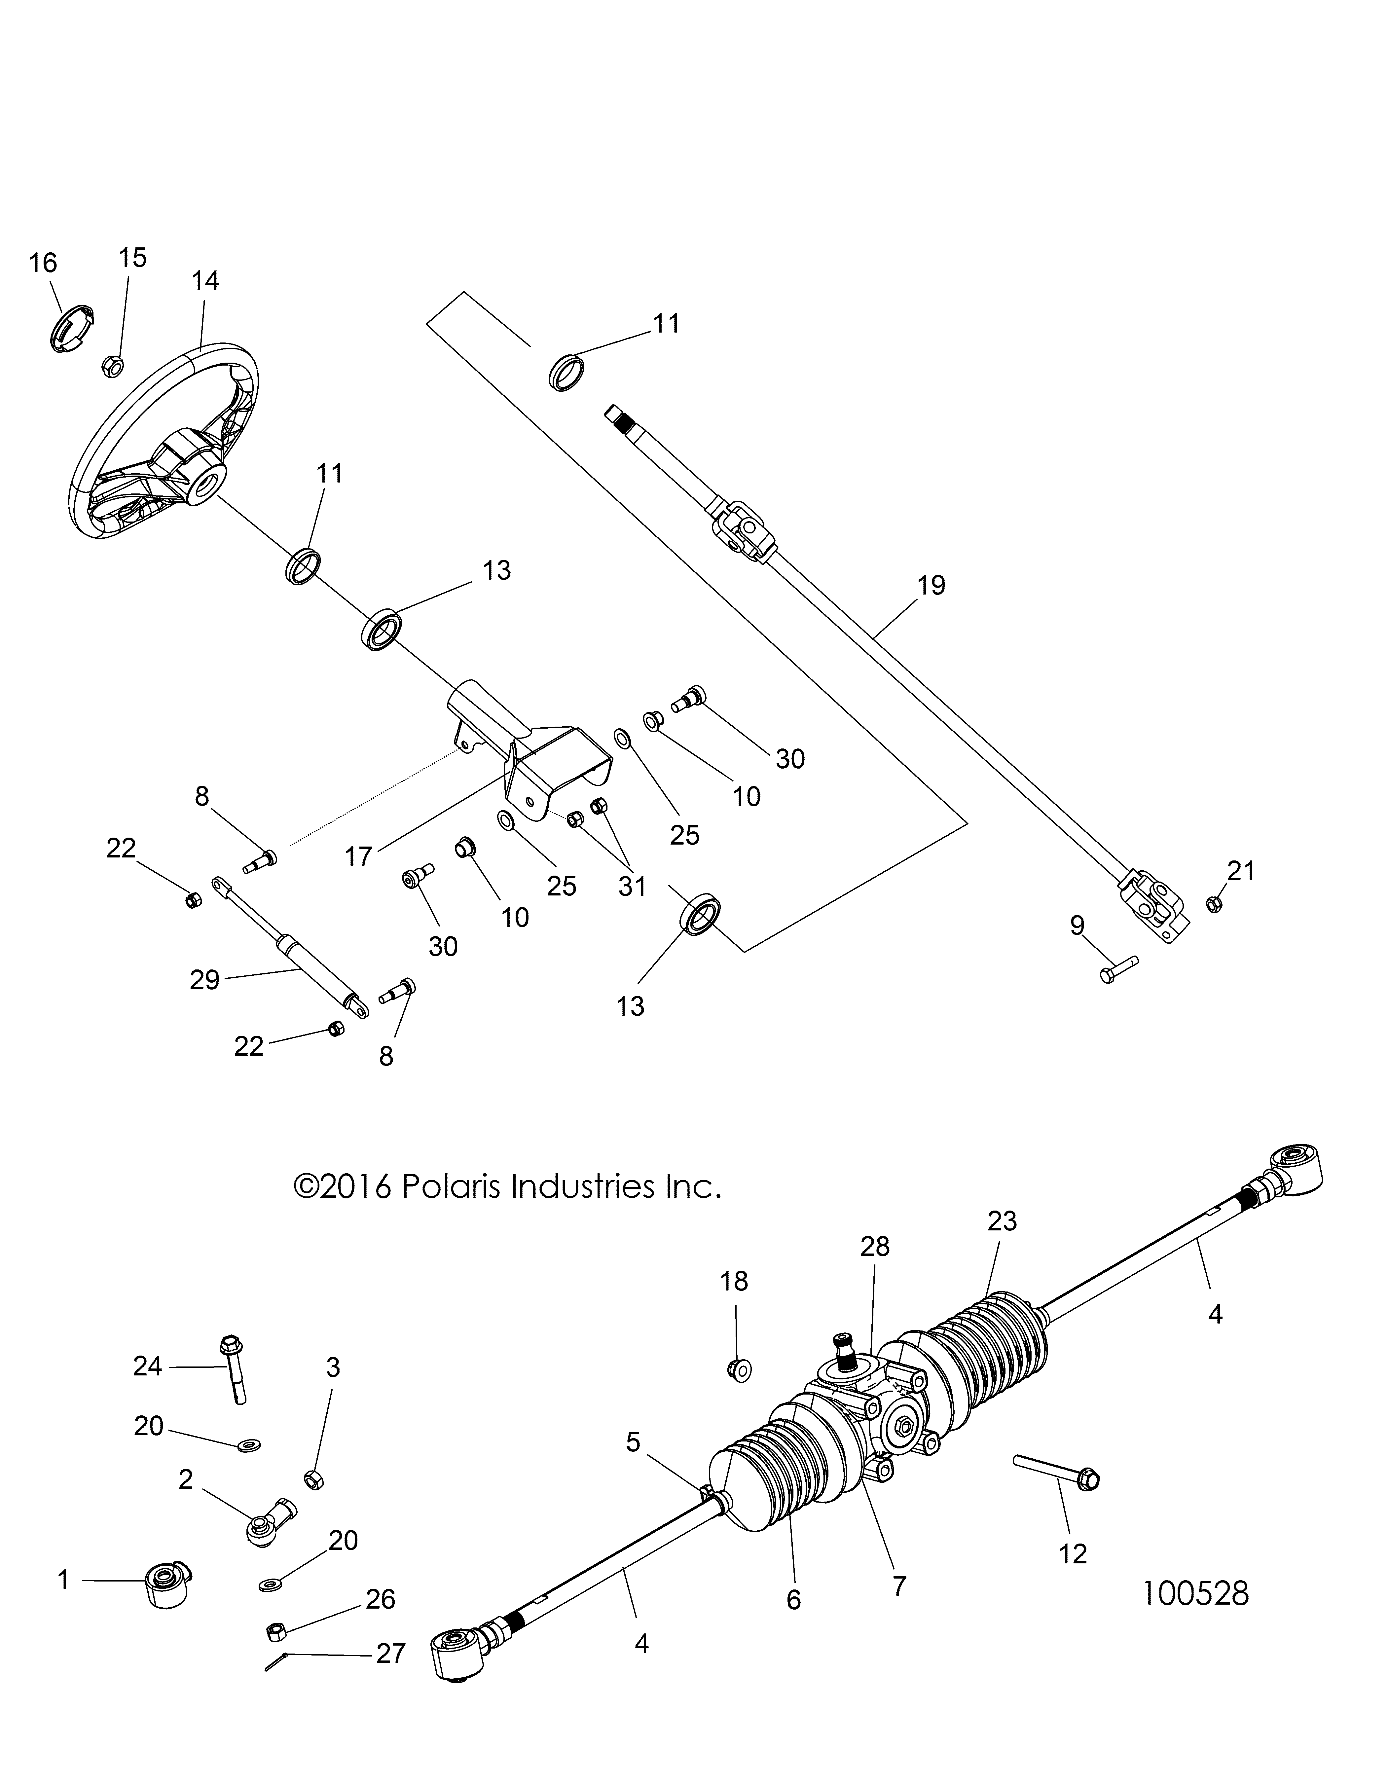 Foto diagrama Polaris que contem a peça 5412012